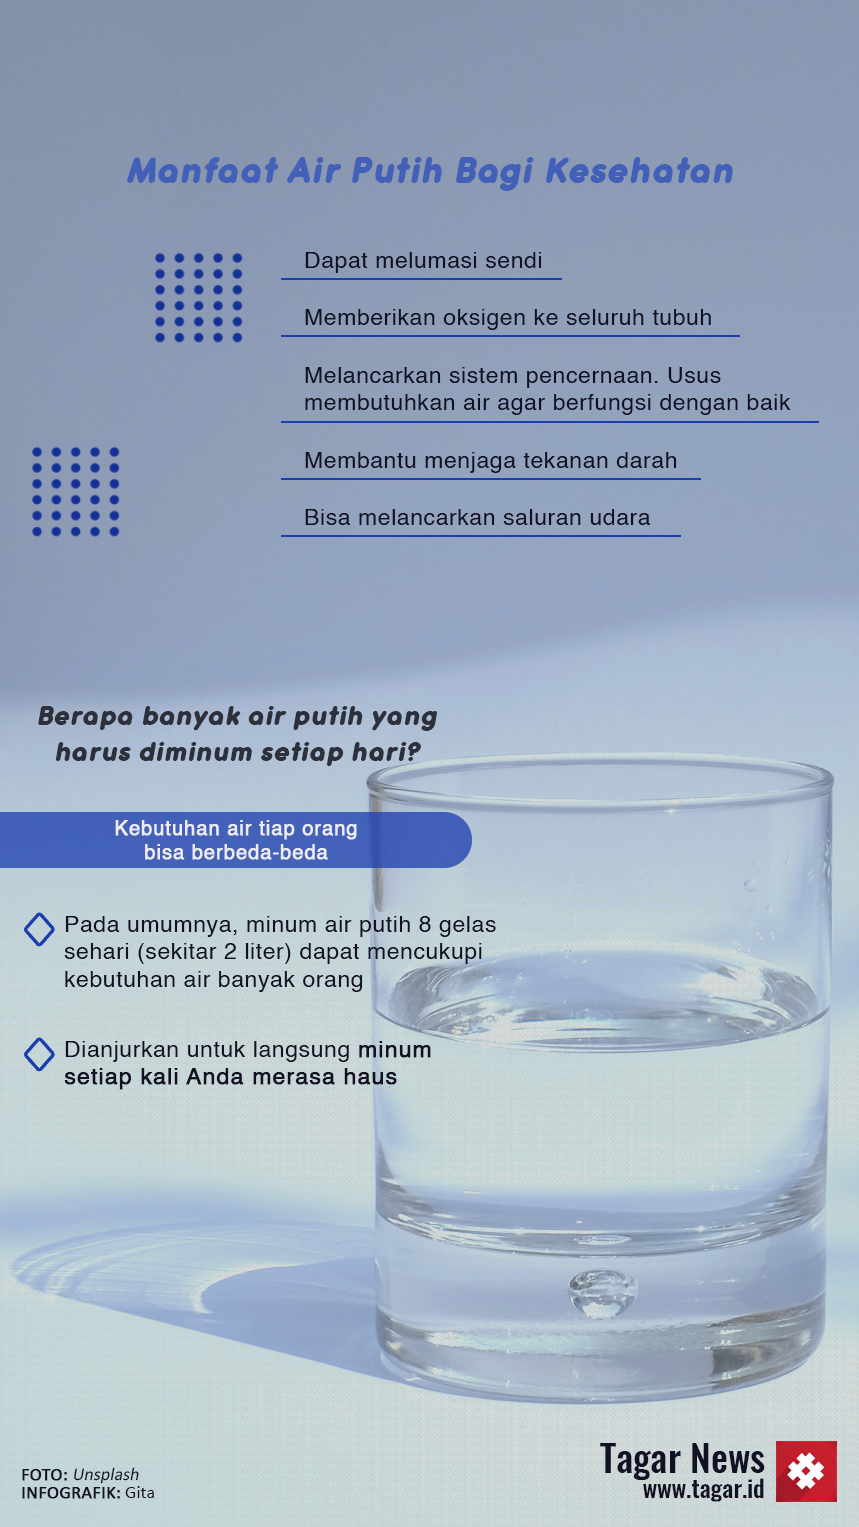 Infografis air putih